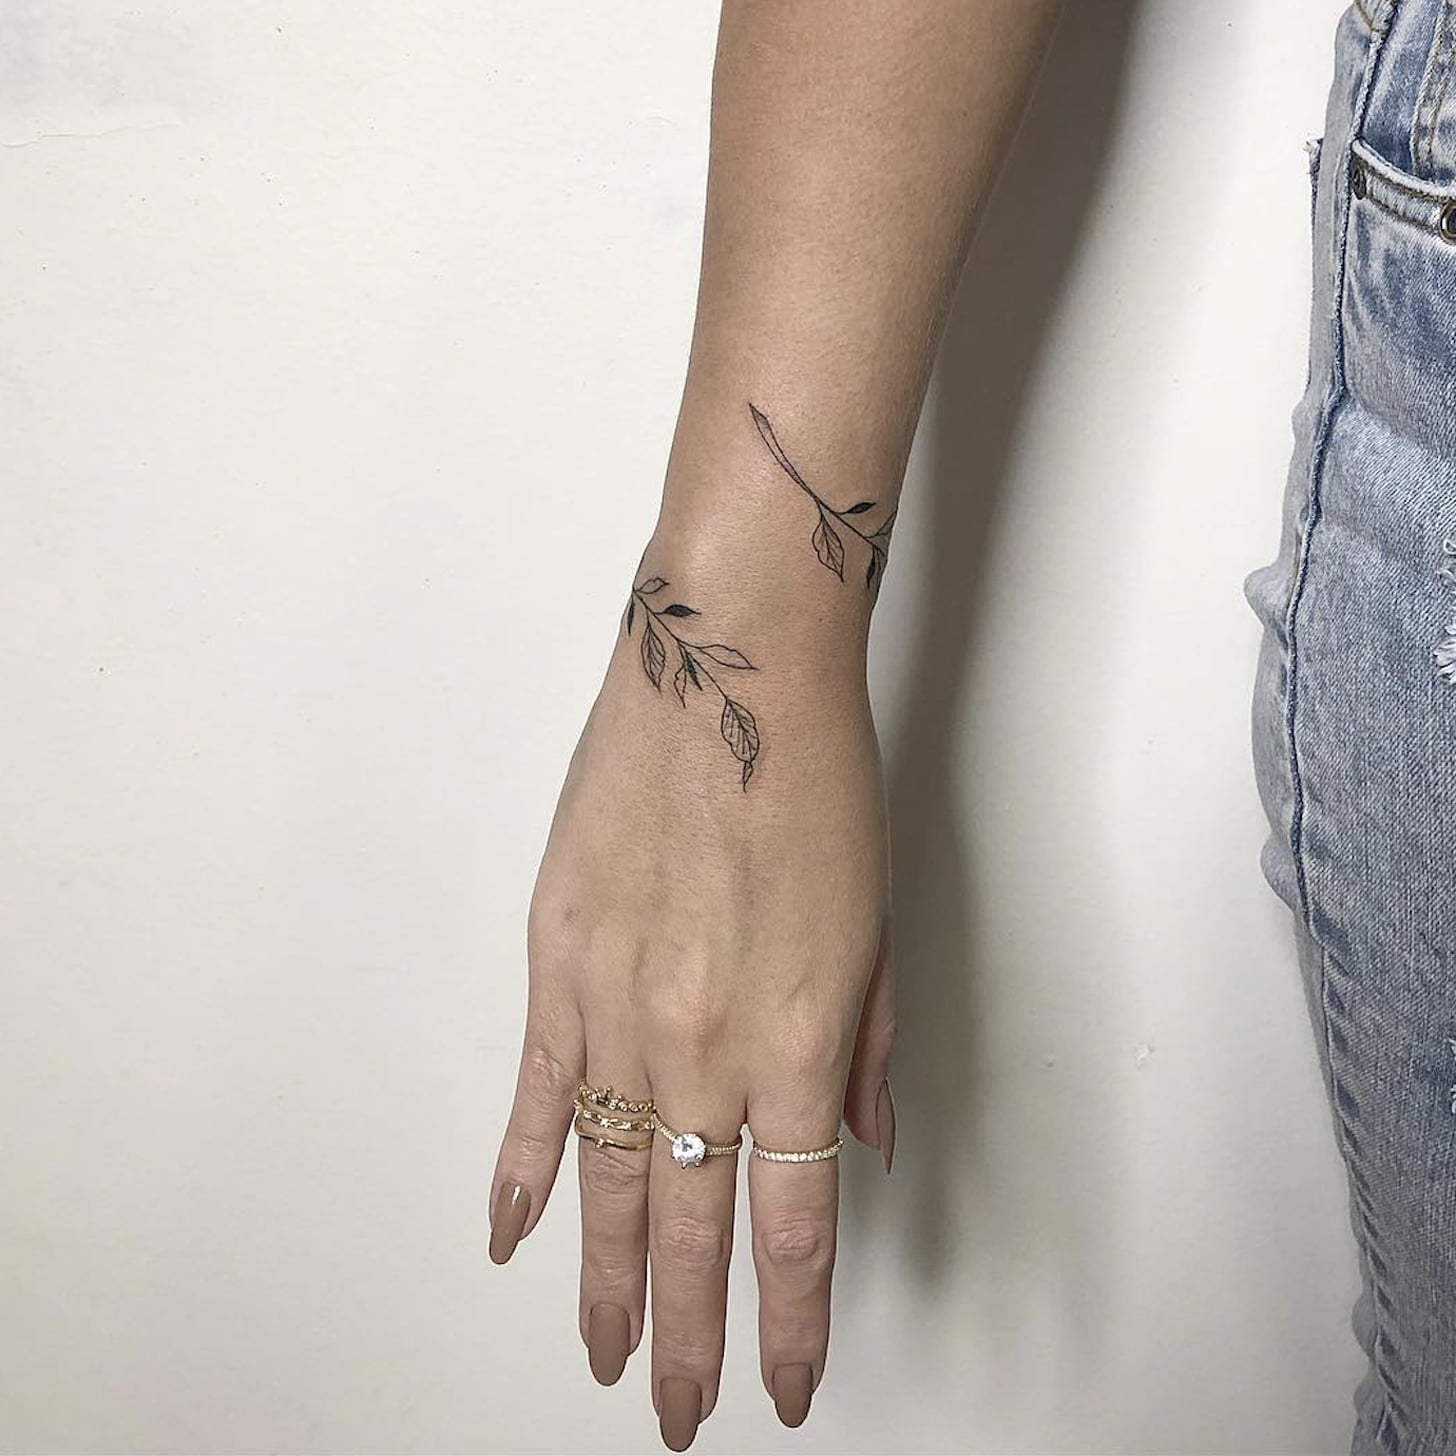 Wrist cuff tattoo ideas